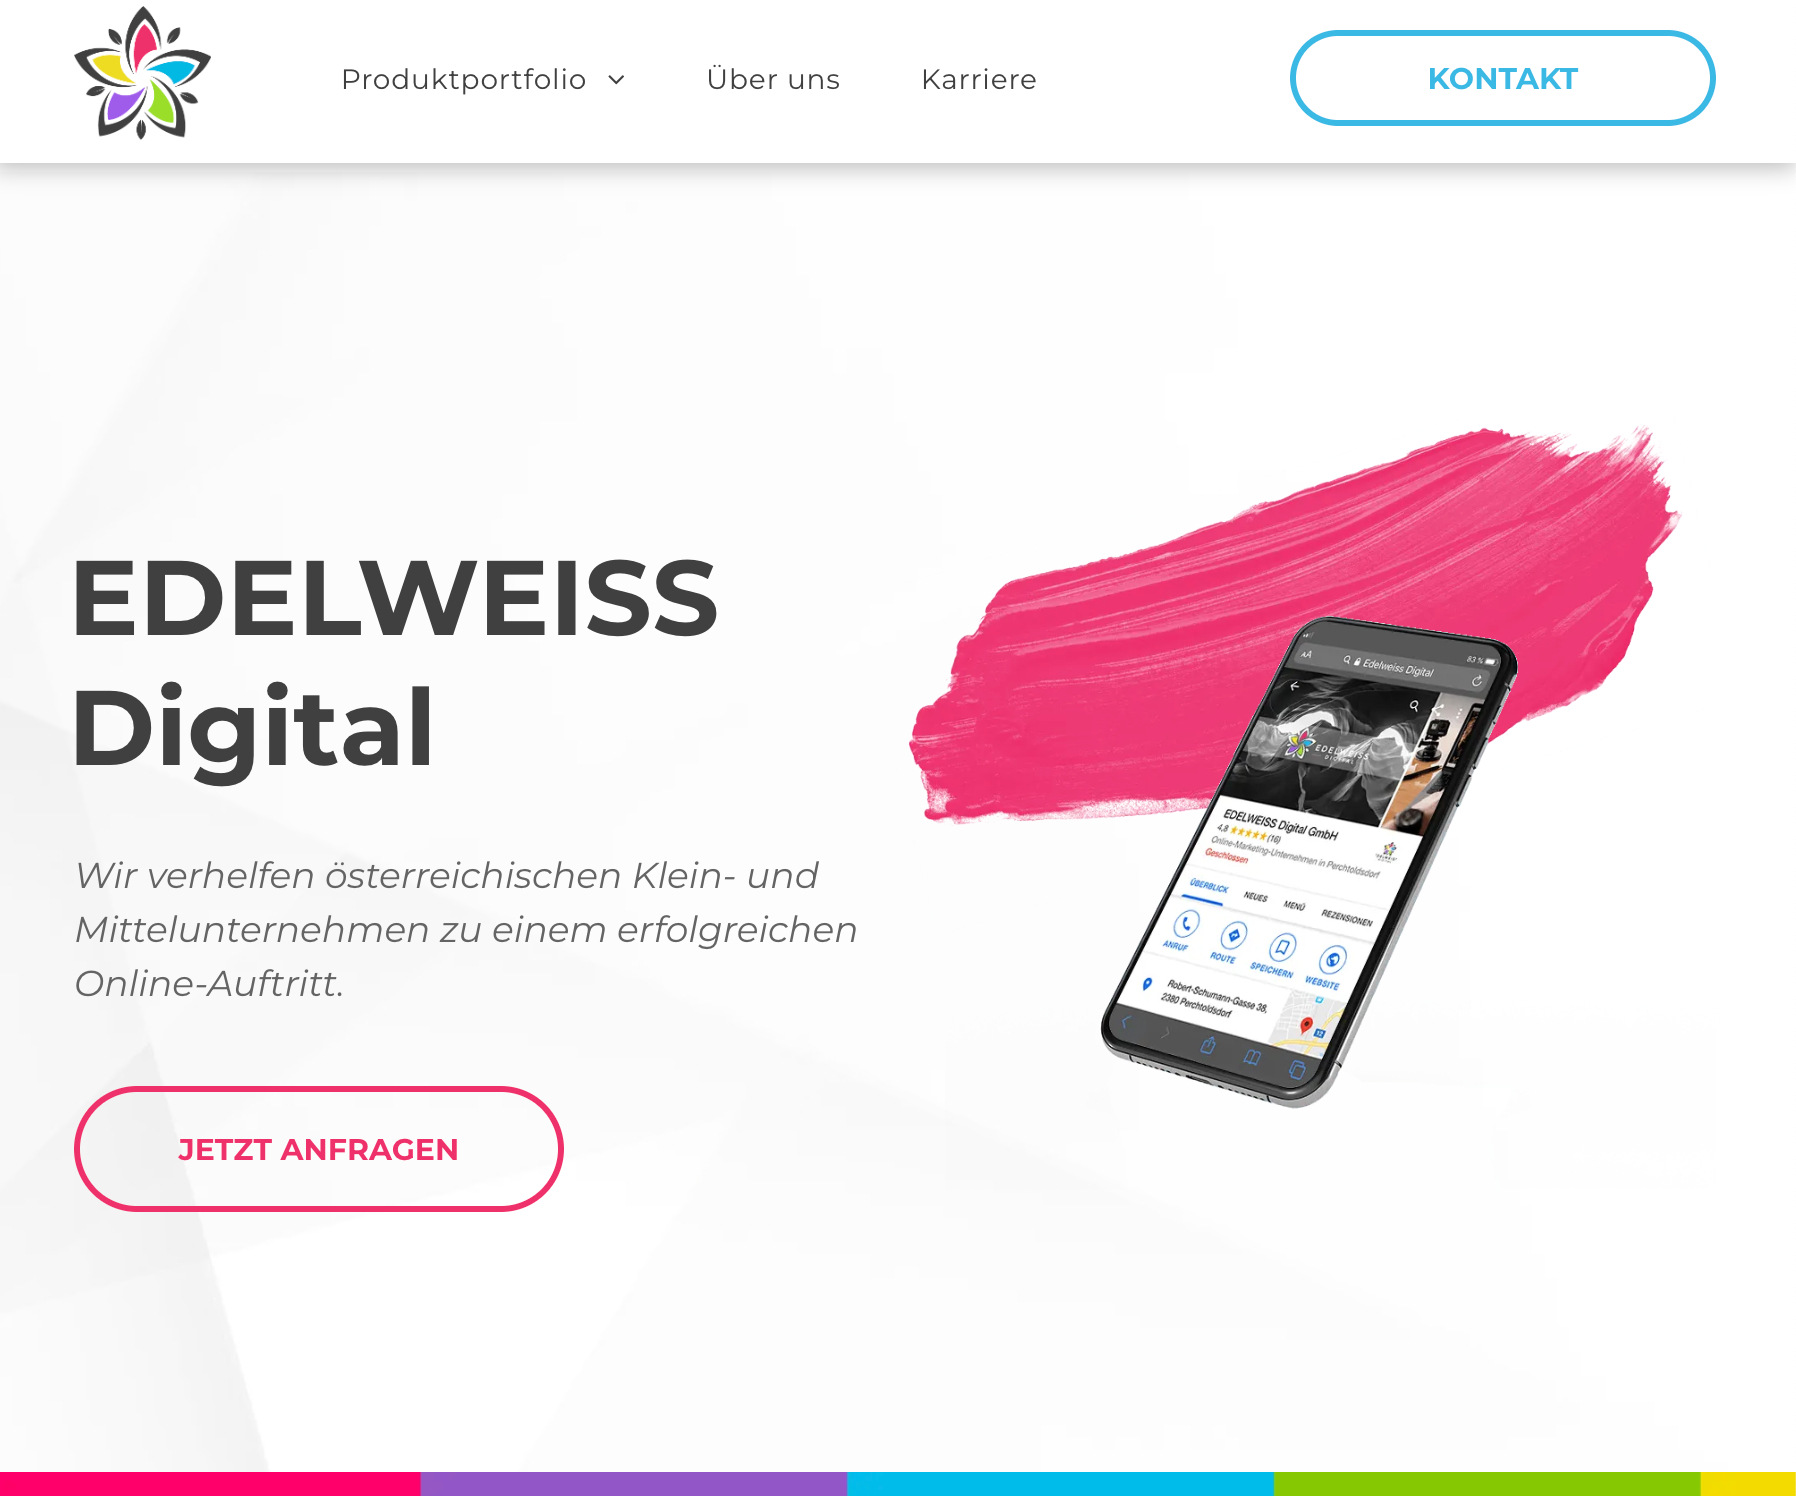 Startseite der Online Marketing Agentur EDELWEISS Digital